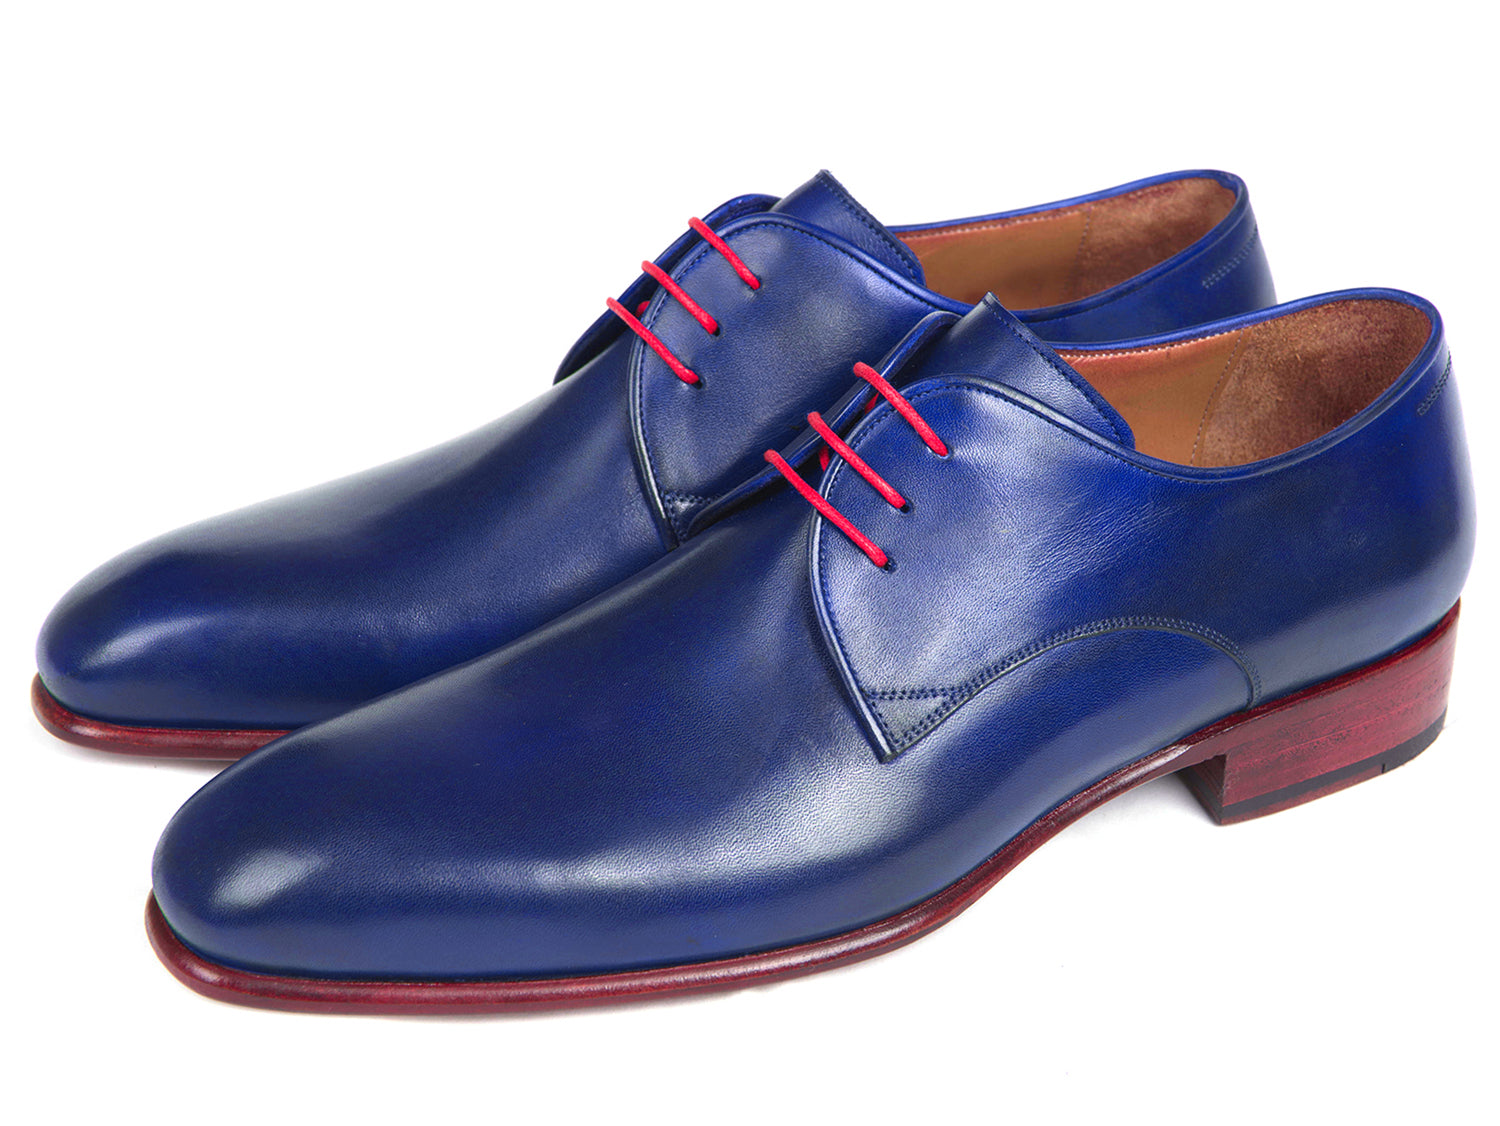 Paul Parkman Blue Hand Painted Derby Shoes (ID#633BLU13) – PAUL PARKMAN ...